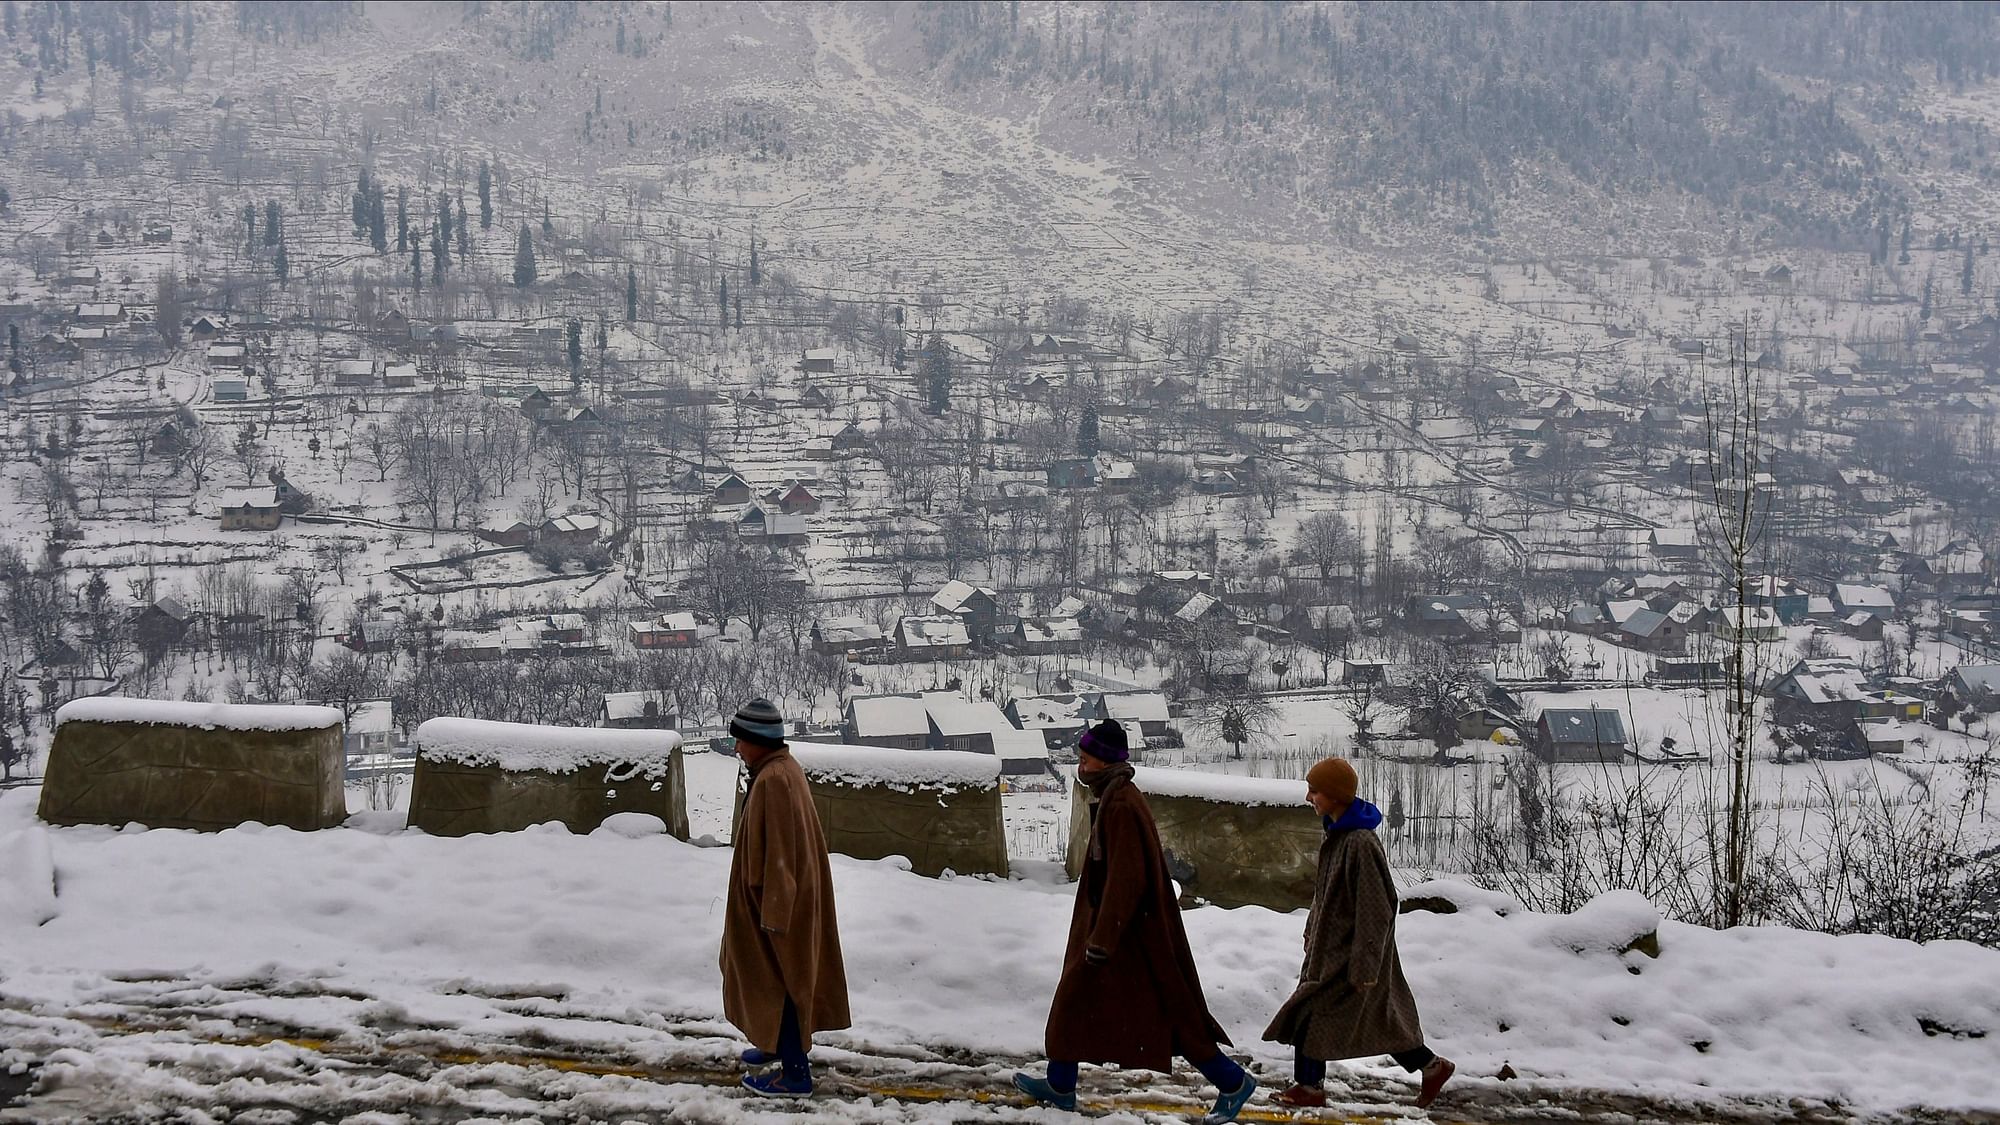 मध्य कश्मीर के गांदरबल जिले में बर्फ से ढके रास्ते पर चलते बच्चे (बुधवार, 2 जनवरी).